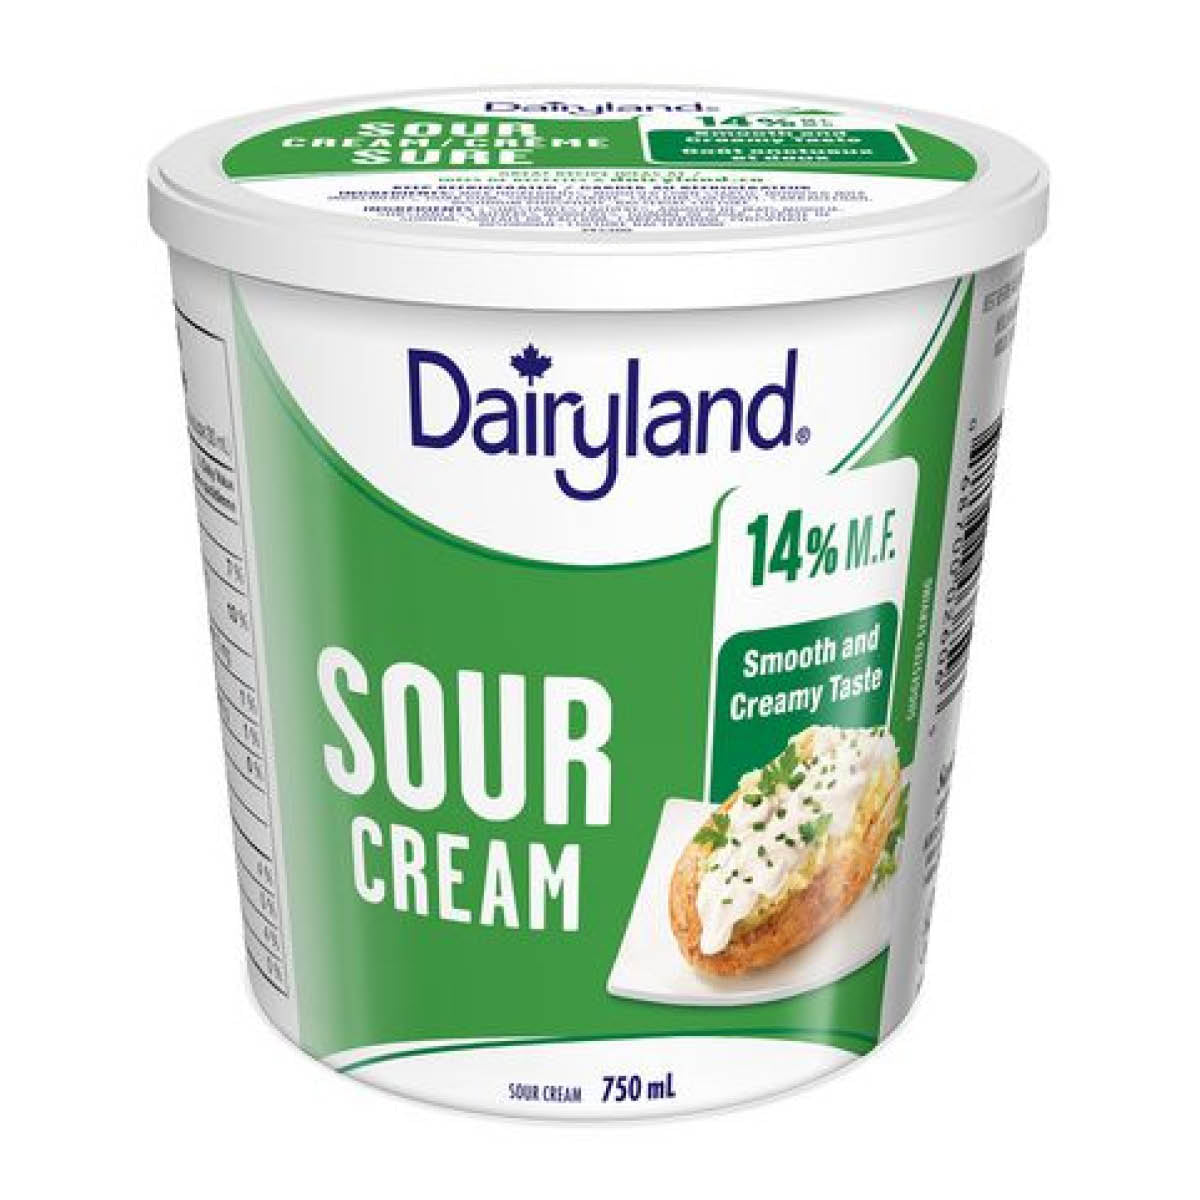 Dairyland Sour Cream 14% M.F., 750ml